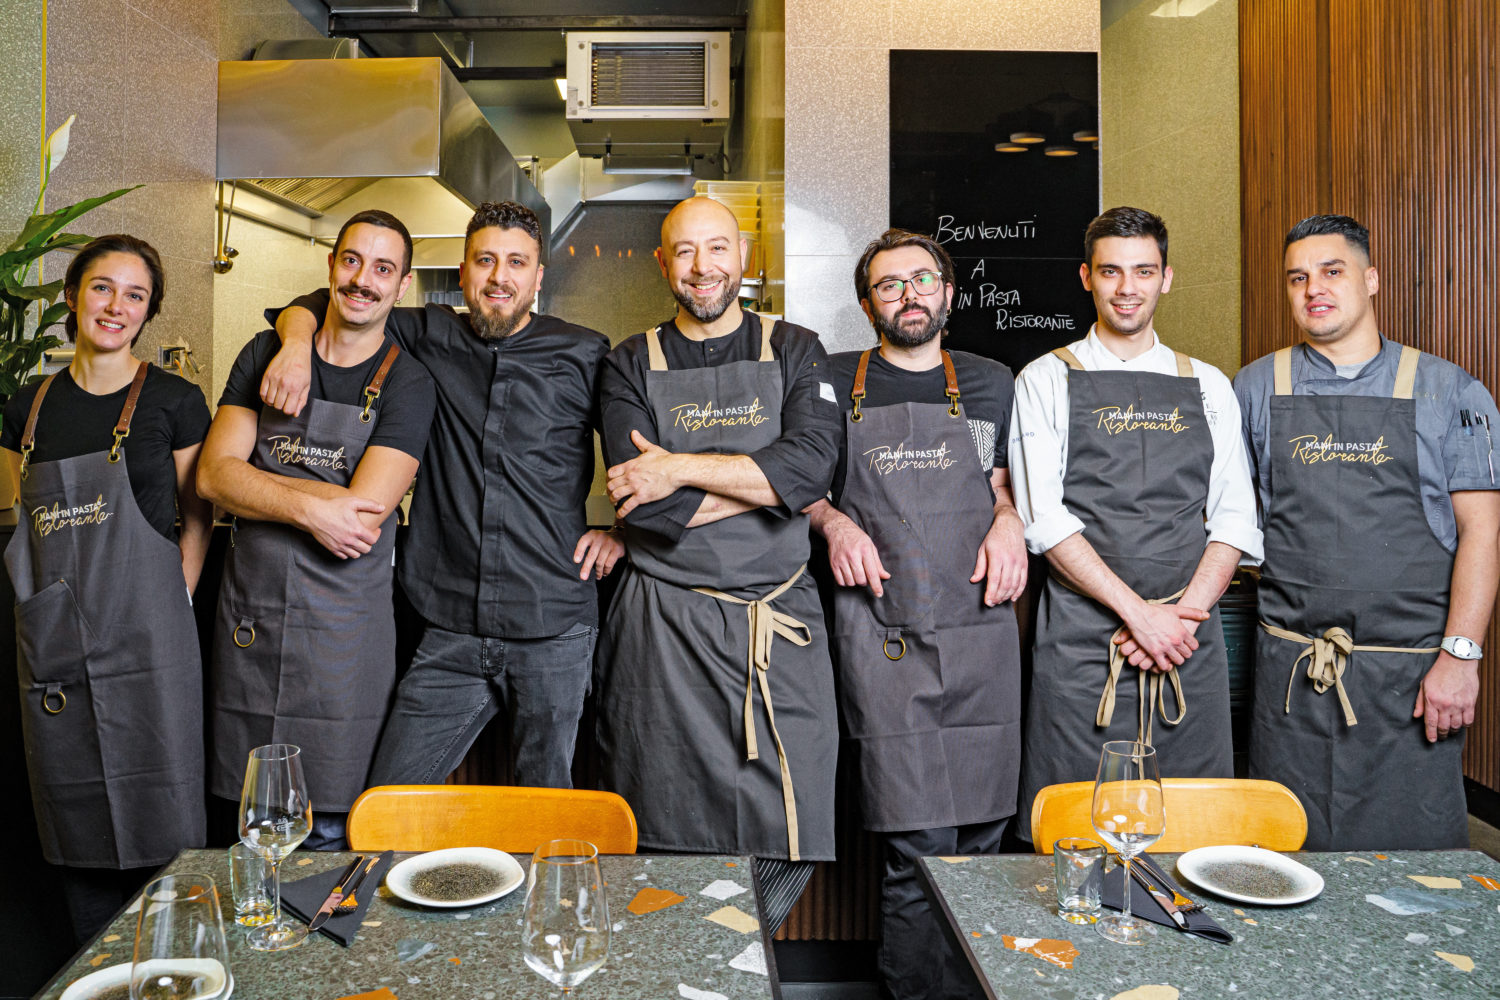 Italien in Berlin: Das Team von Mani in Pasta produziert erstklassige Pasta. 